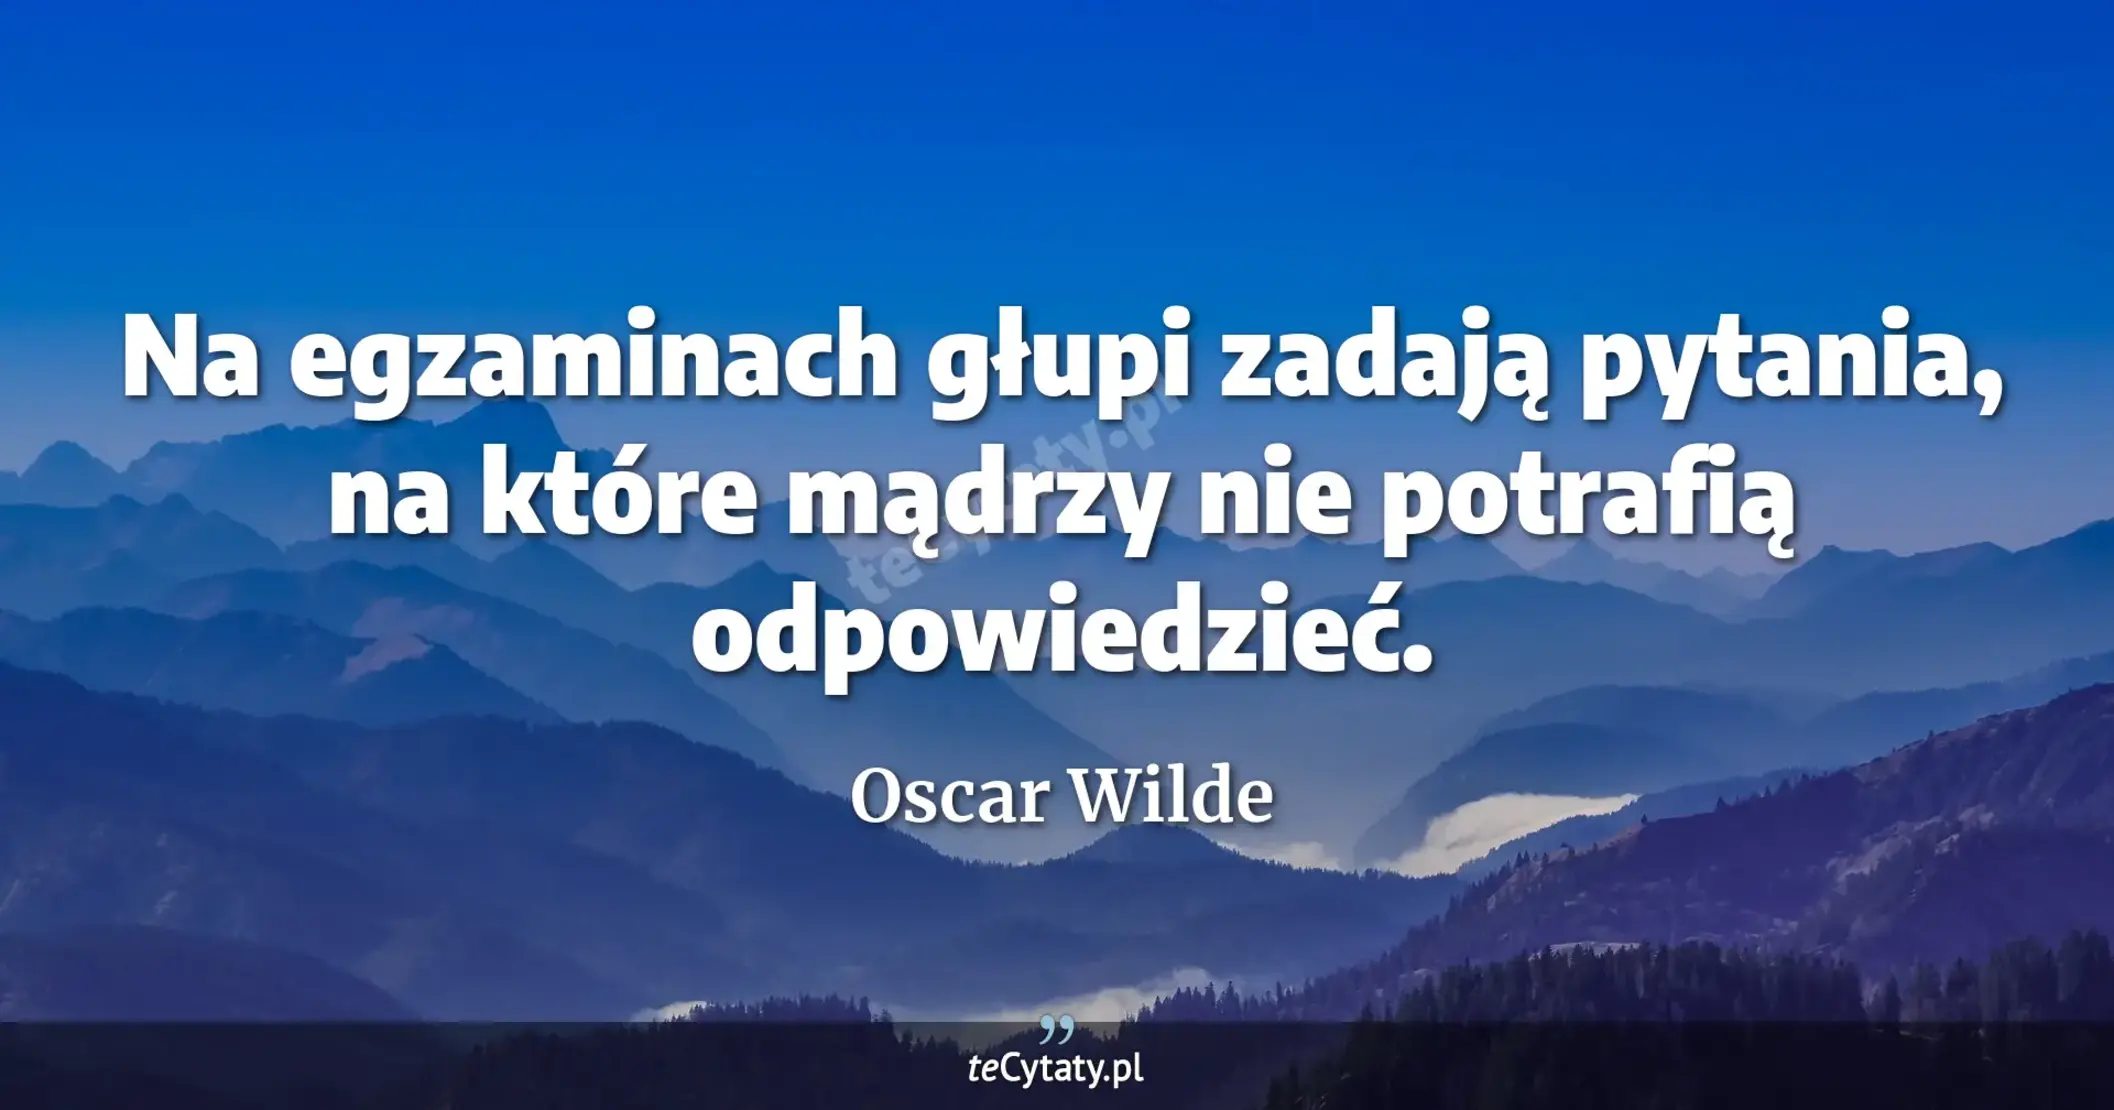 Na egzaminach głupi zadają pytania, na które mądrzy nie potrafią odpowiedzieć. - Oscar Wilde